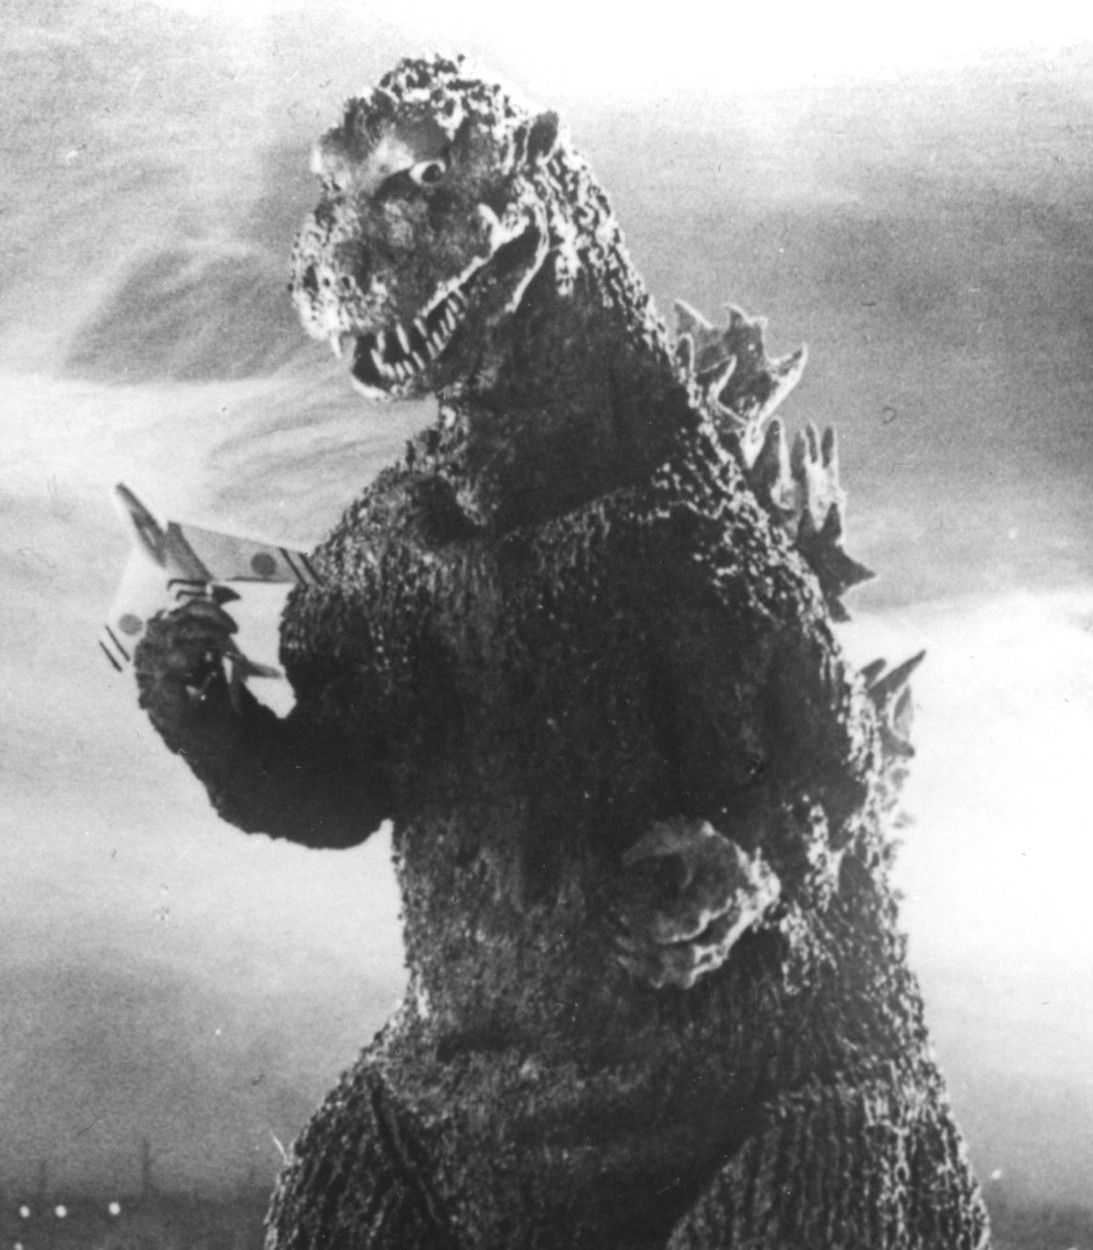 Classic Godzilla movie still